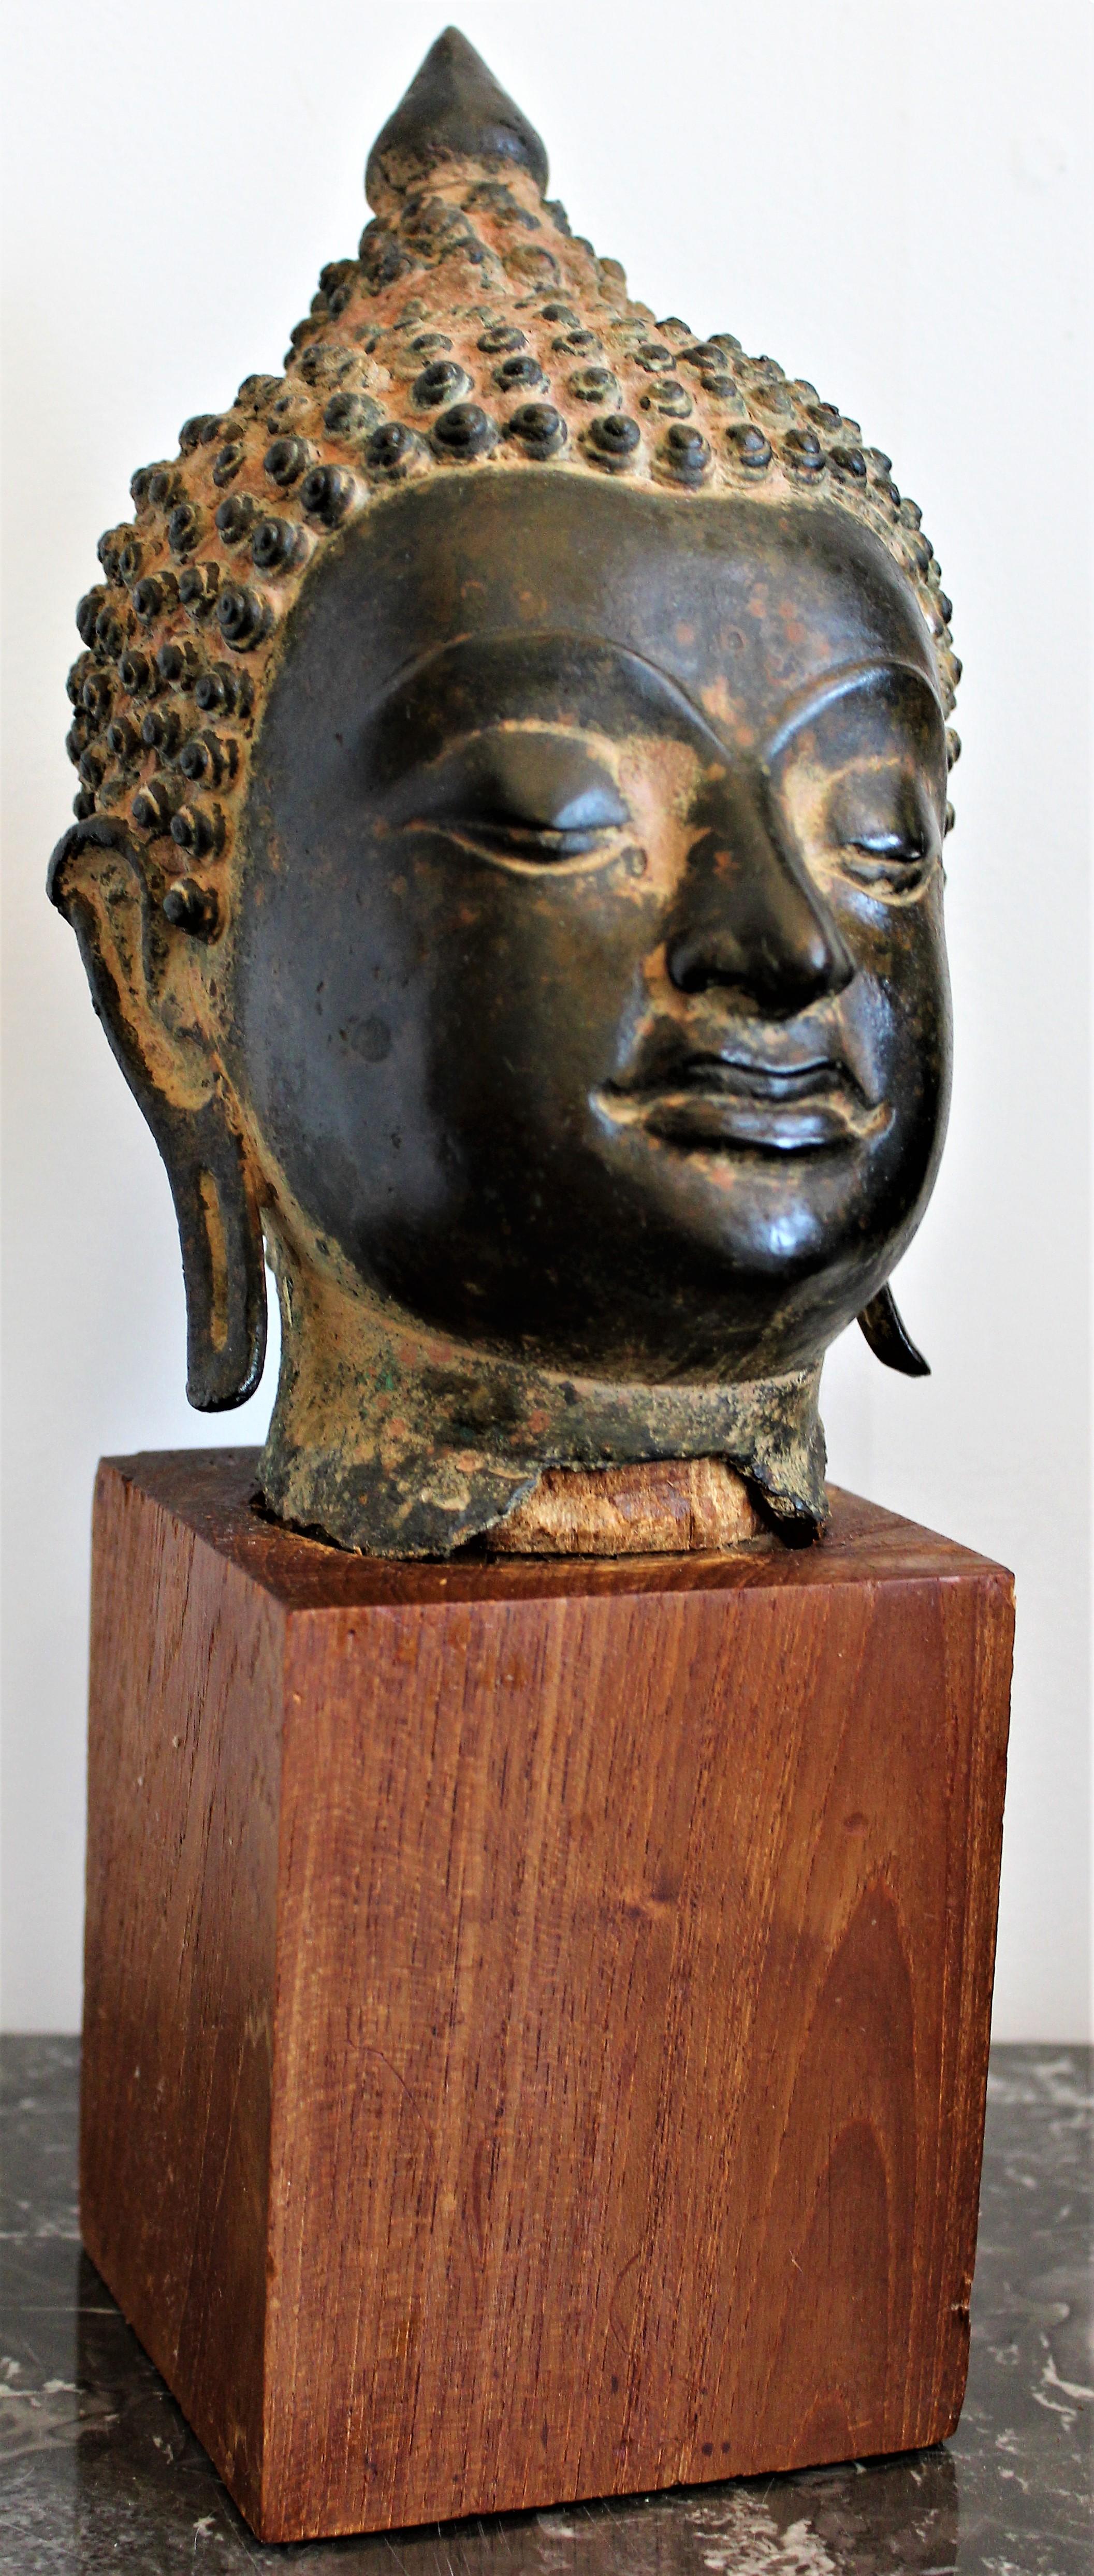 Antikes asiatisches und äußerst detailreiches Bronzegussfragment eines Buddhakopfes aus dem 18. Jahrhundert, das vermutlich thailändischen oder tibetischen Ursprungs ist. Das Skulpturenfragment ist sicher auf einem einfachen Teakholzblock